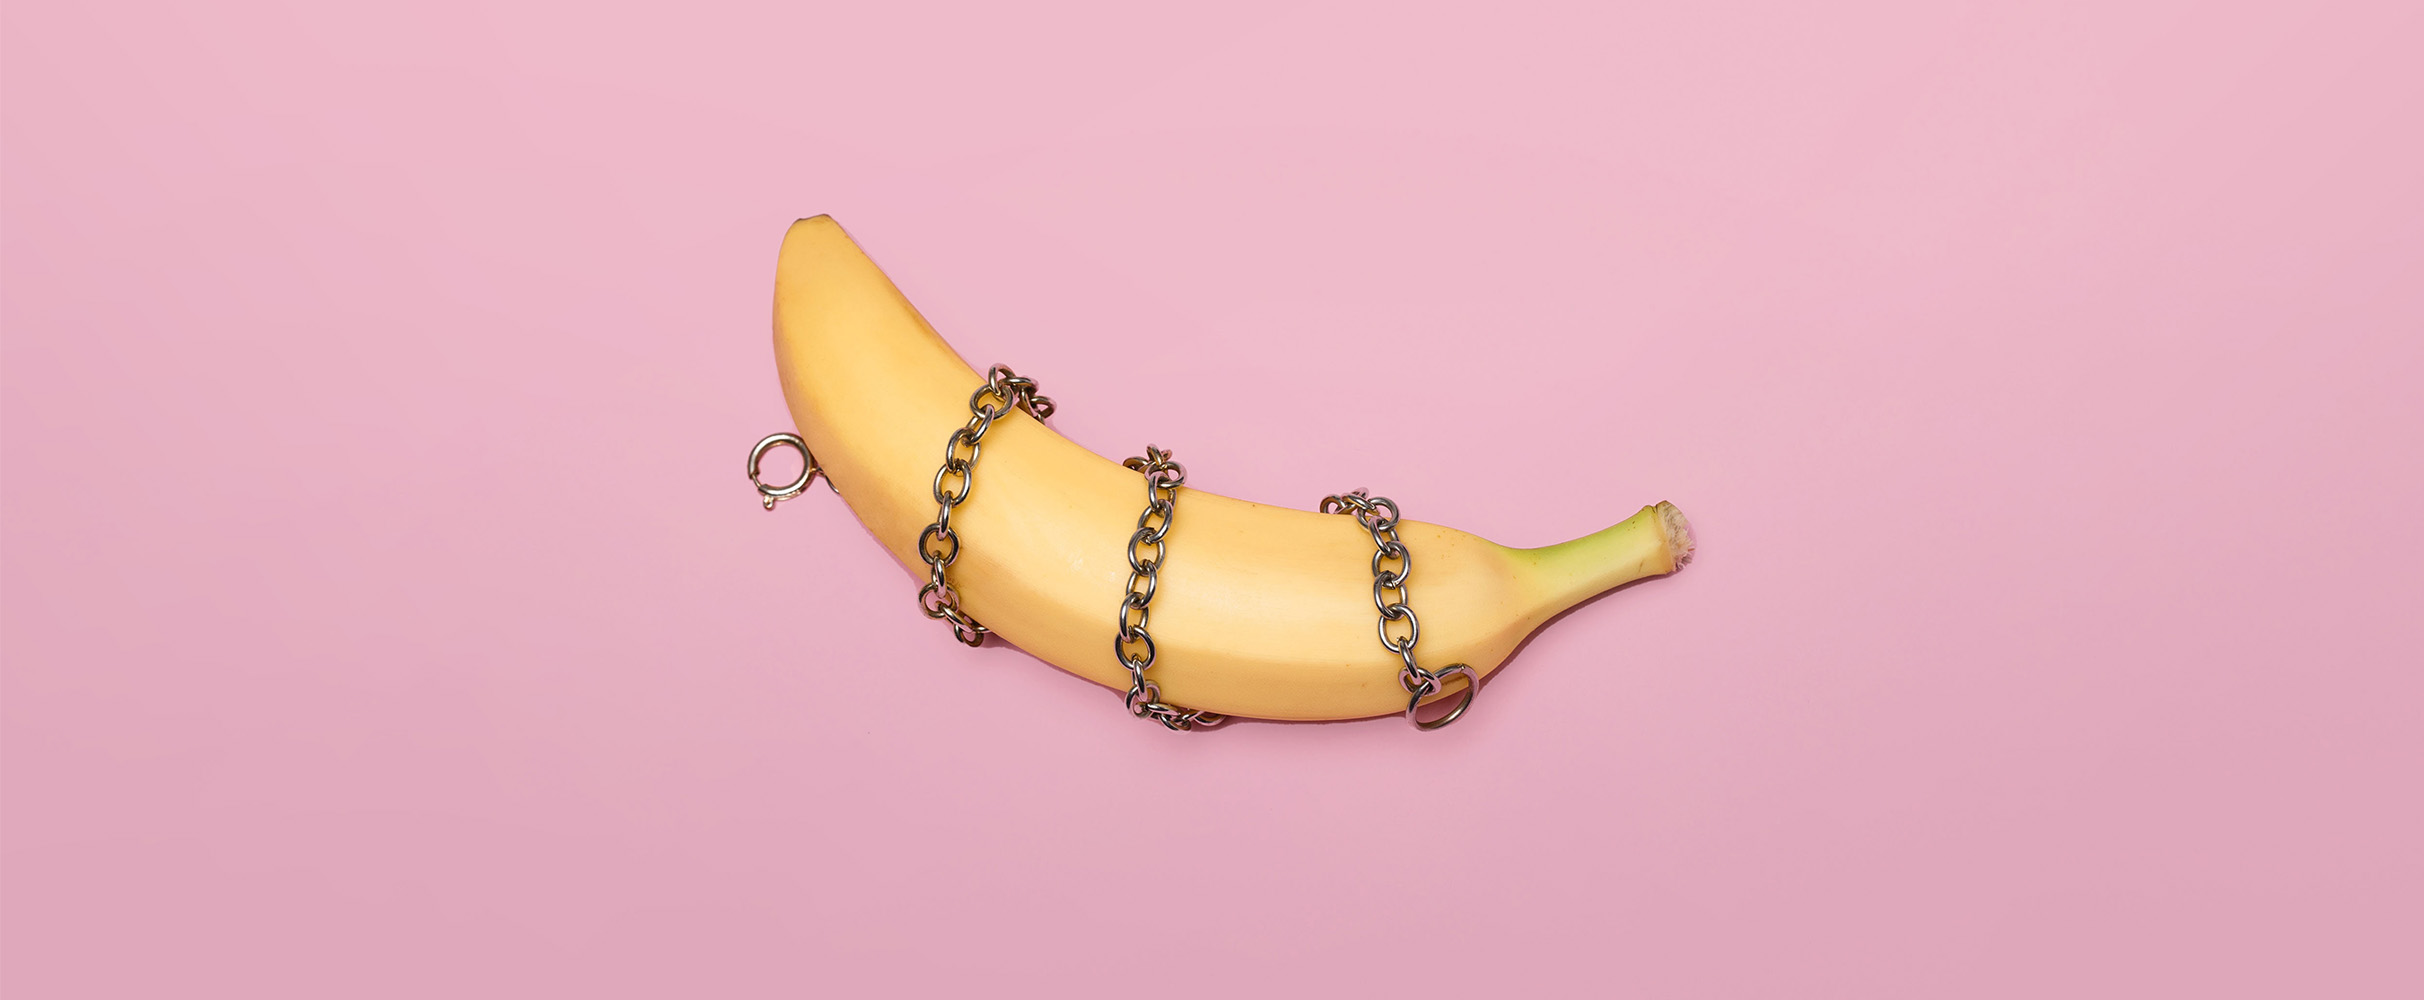 Gevalletje nooit over nagedacht: dit is waarom er slierten aan een banaan hangen